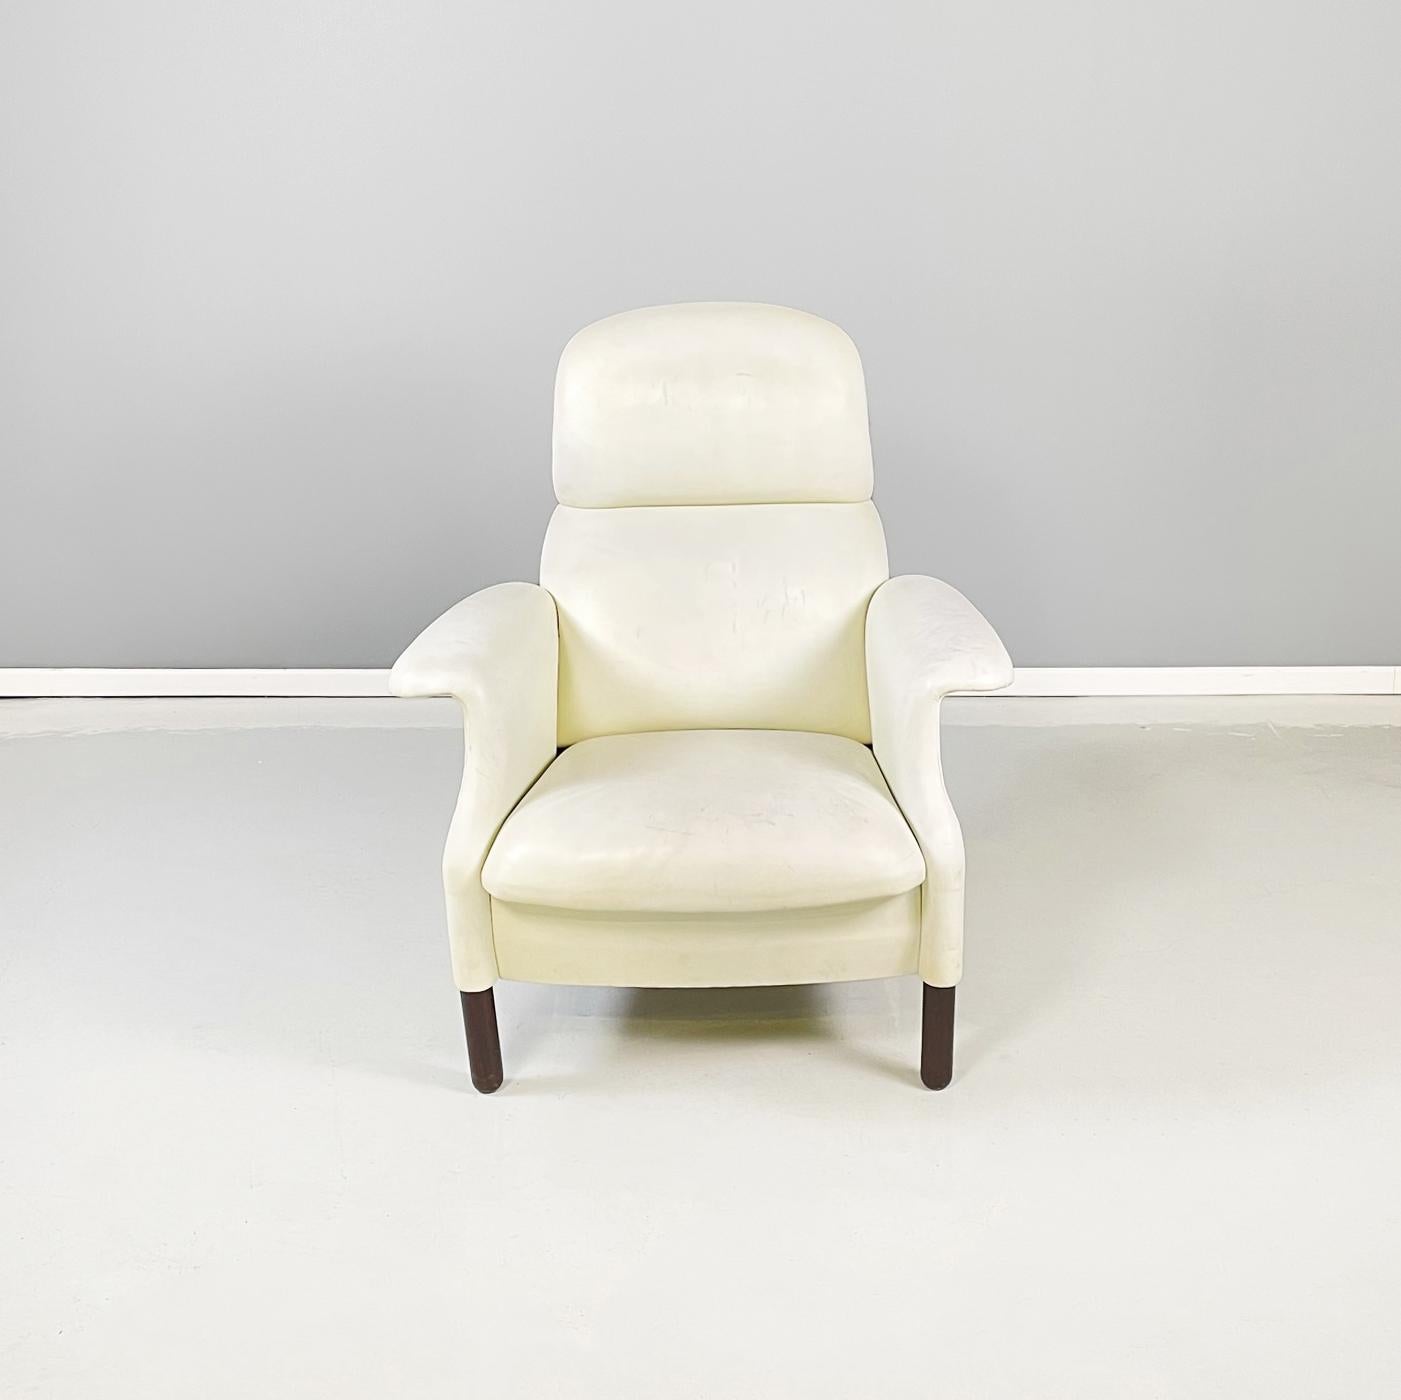 Italienischer Sessel der Jahrhundertmitte mod. Sanluca von Pier Giacomo und Achille Castiglioni für Gavina, 1960er Jahre
Eleganter Sessel Mod. Sanluca aus weißem Leder. Gepolsterte Sitzfläche in Quadratform. Die ikonische Rückenlehne setzt sich aus